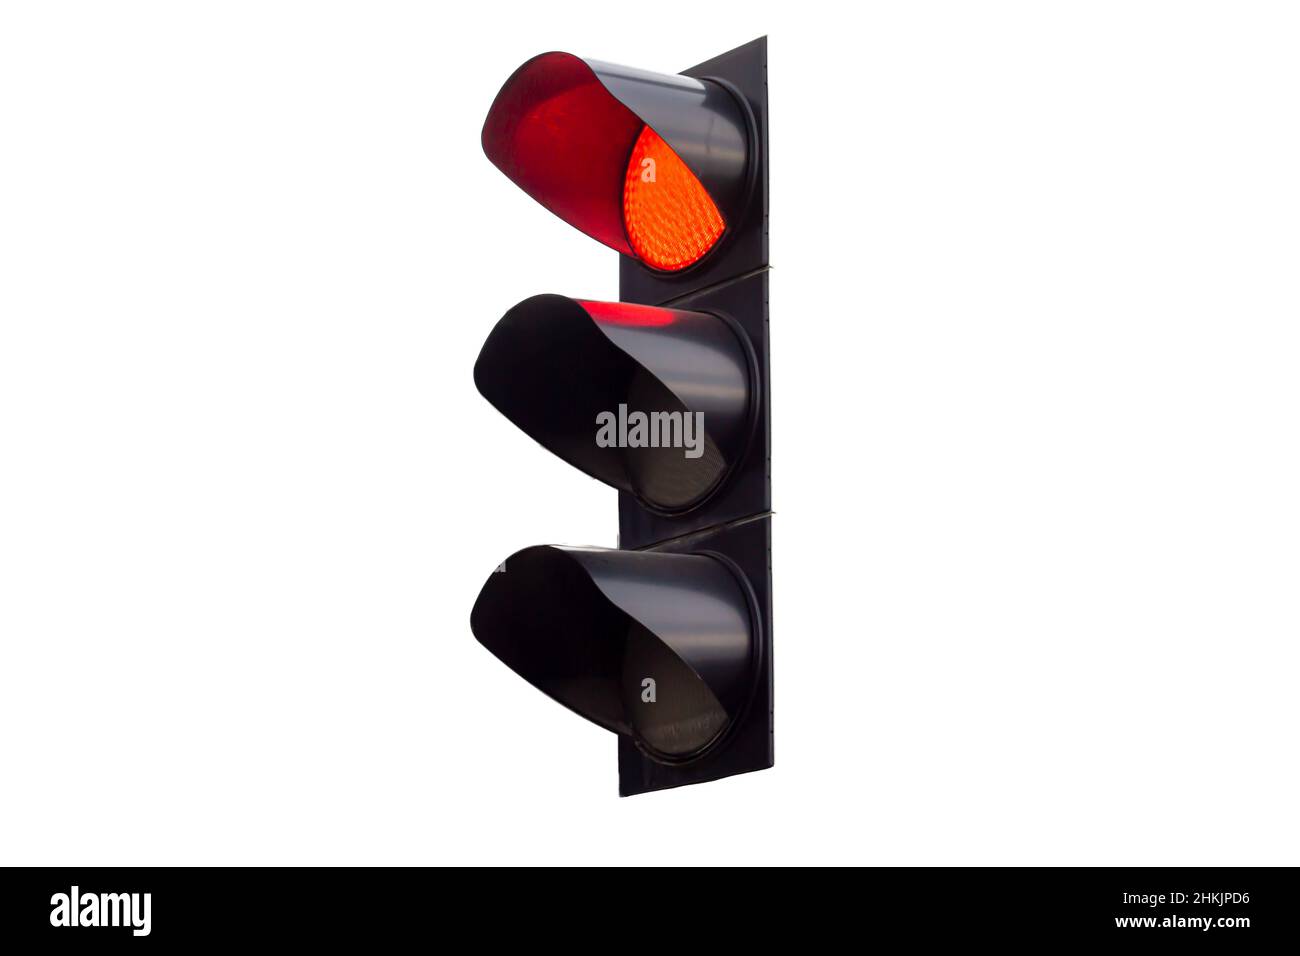 Semaforo rosso, colore rosso sul semaforo isolato su sfondo bianco Foto Stock